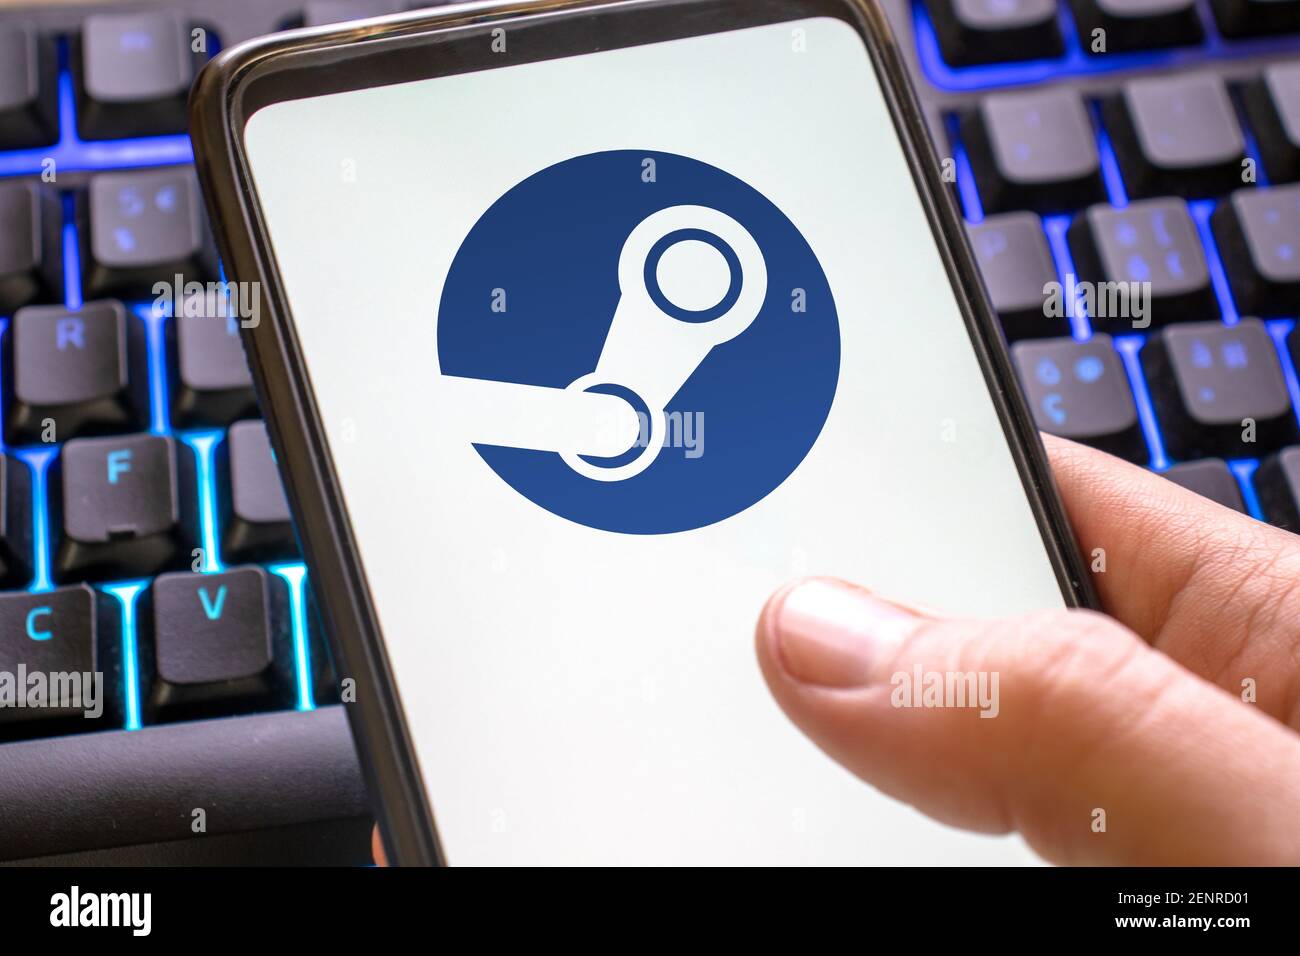 Steam-Logo auf einem Telefon-Bildschirm mit einem blauen Gaming-Tastatur  Hintergrund. App für pc-Spiele Plattform-Symbol auf dem Smartphone-Display.  Italien, Mailand, 26-02-21 Stockfotografie - Alamy